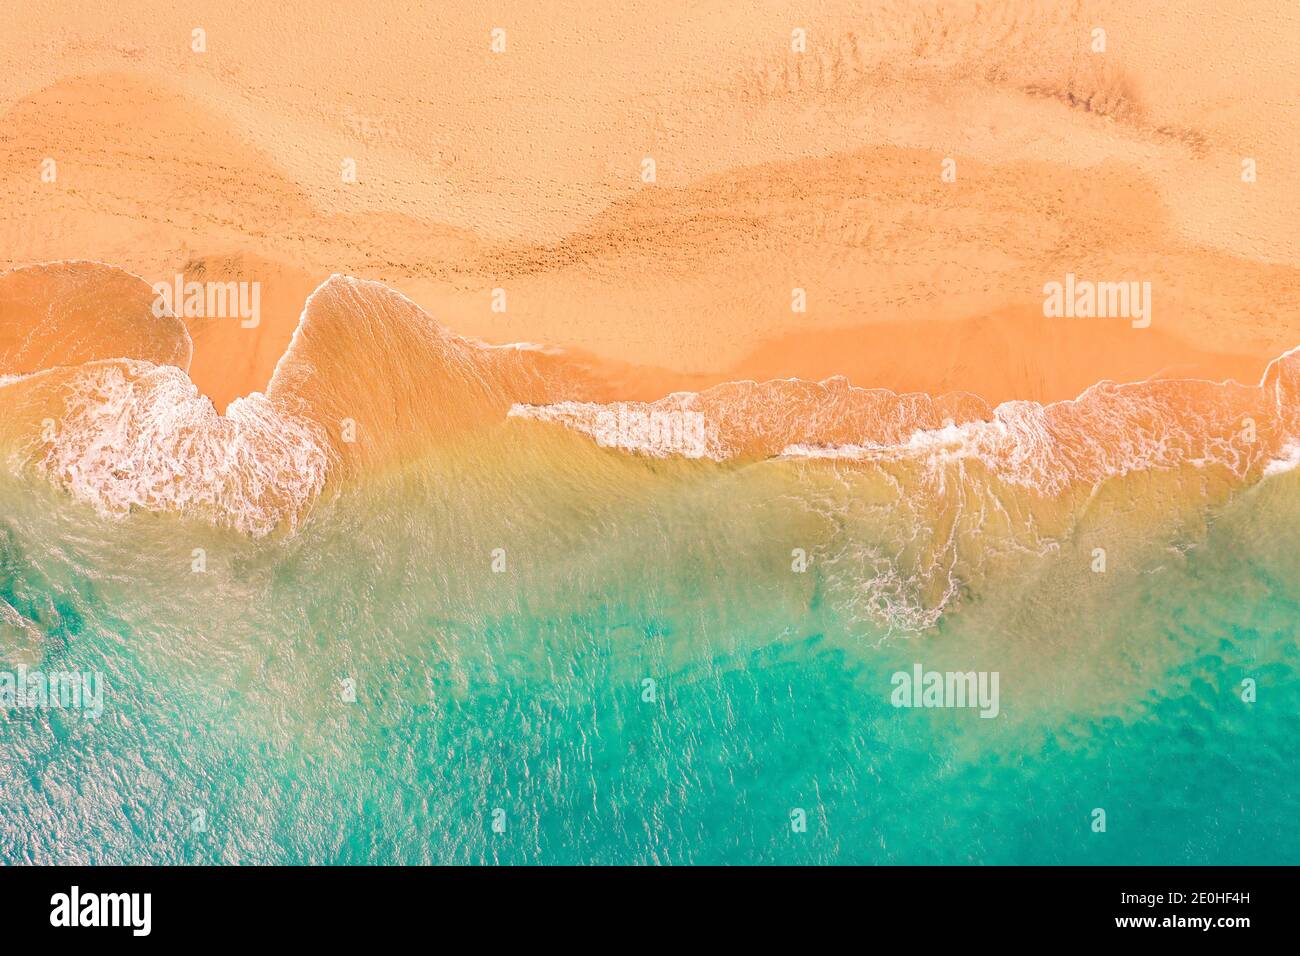 Vue aérienne de haut en bas de la magnifique côte atlantique de l'océan avec des eaux turquoise cristallines et une plage de sable, des vagues se déroulant dans le rivage Banque D'Images